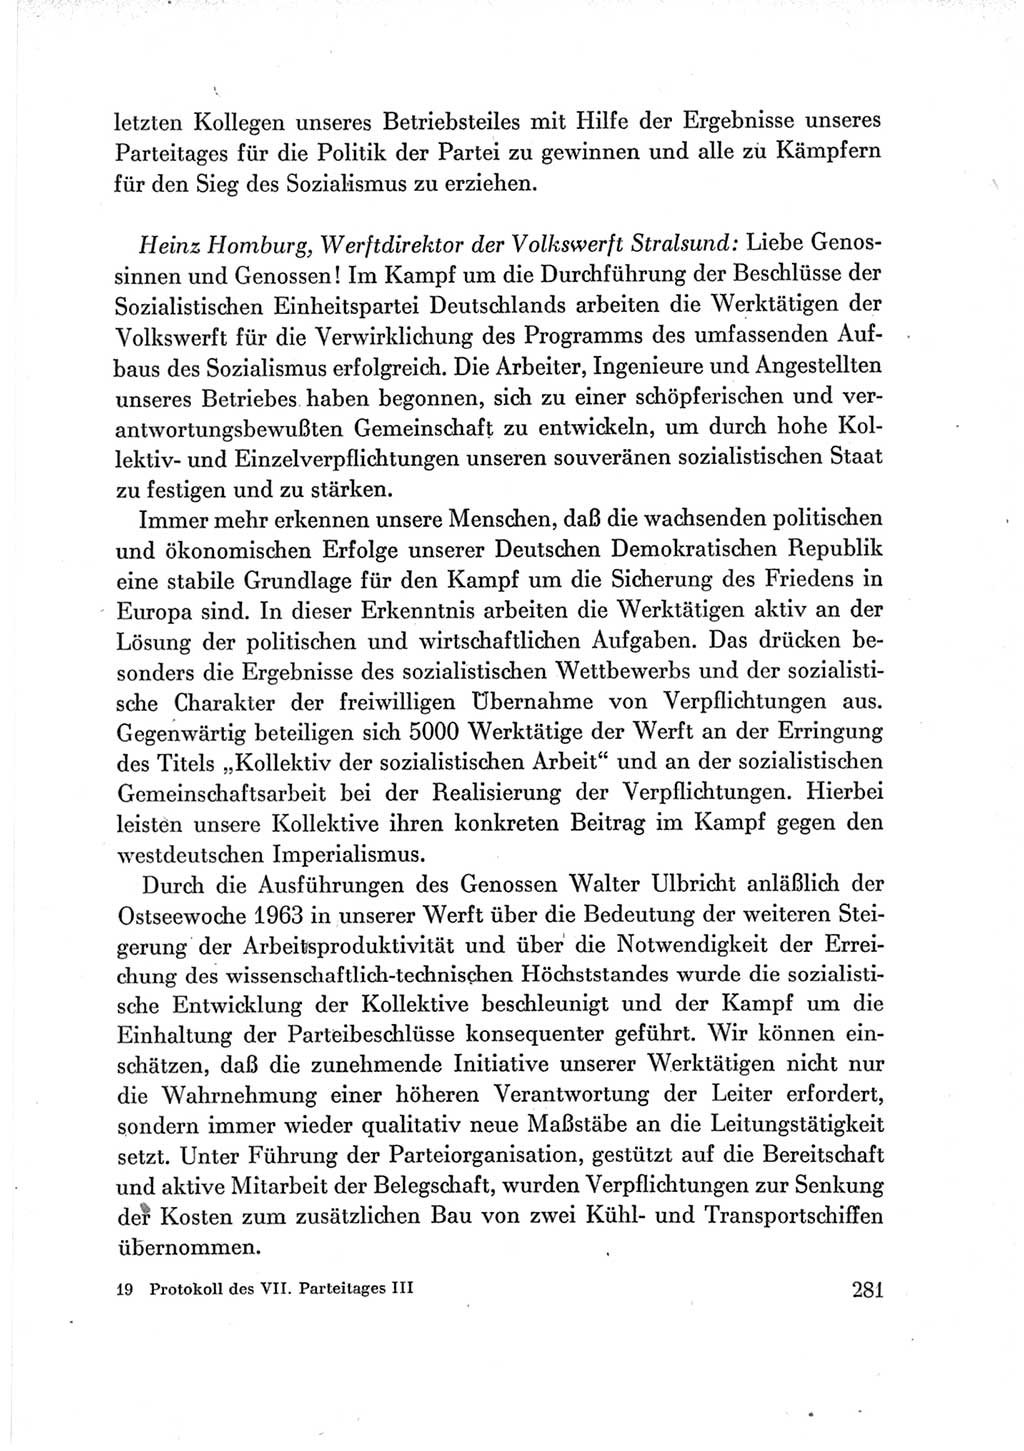 Protokoll der Verhandlungen des Ⅶ. Parteitages der Sozialistischen Einheitspartei Deutschlands (SED) [Deutsche Demokratische Republik (DDR)] 1967, Band Ⅲ, Seite 281 (Prot. Verh. Ⅶ. PT SED DDR 1967, Bd. Ⅲ, S. 281)